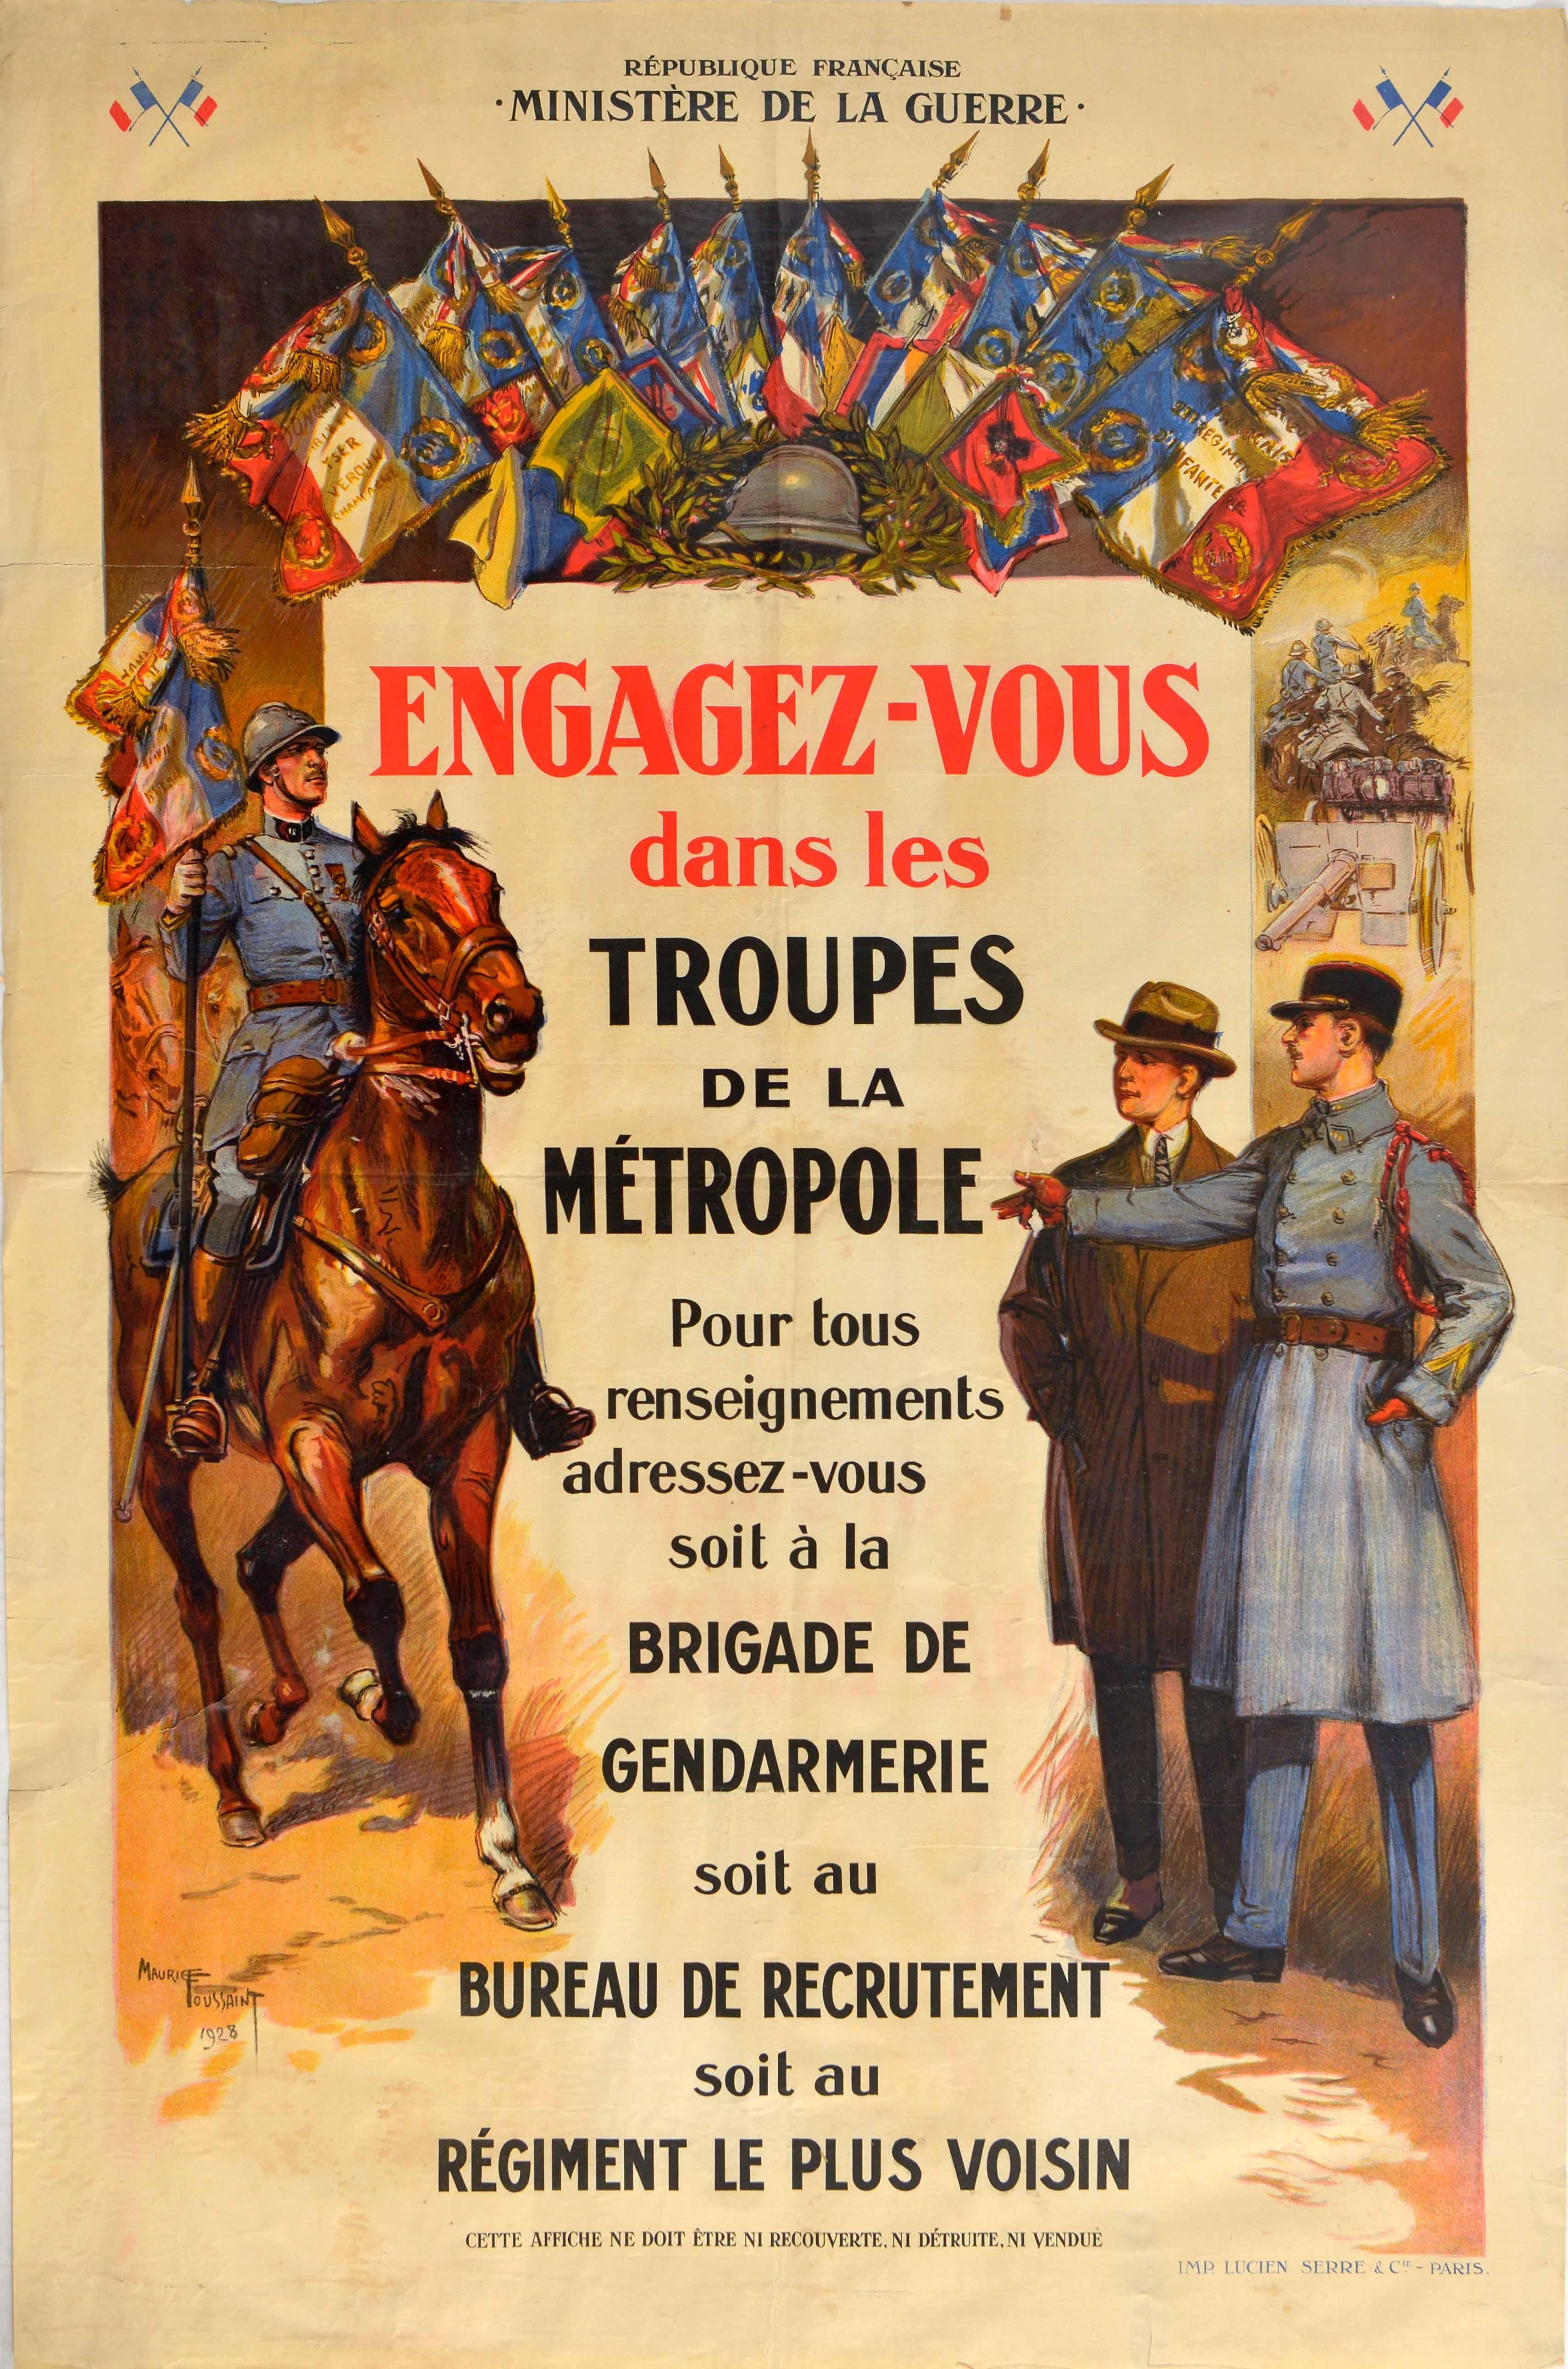 Maurice Toussaint Print - Original Vintage Poster Military Recruitment Troupes De La Metropole Army Troops